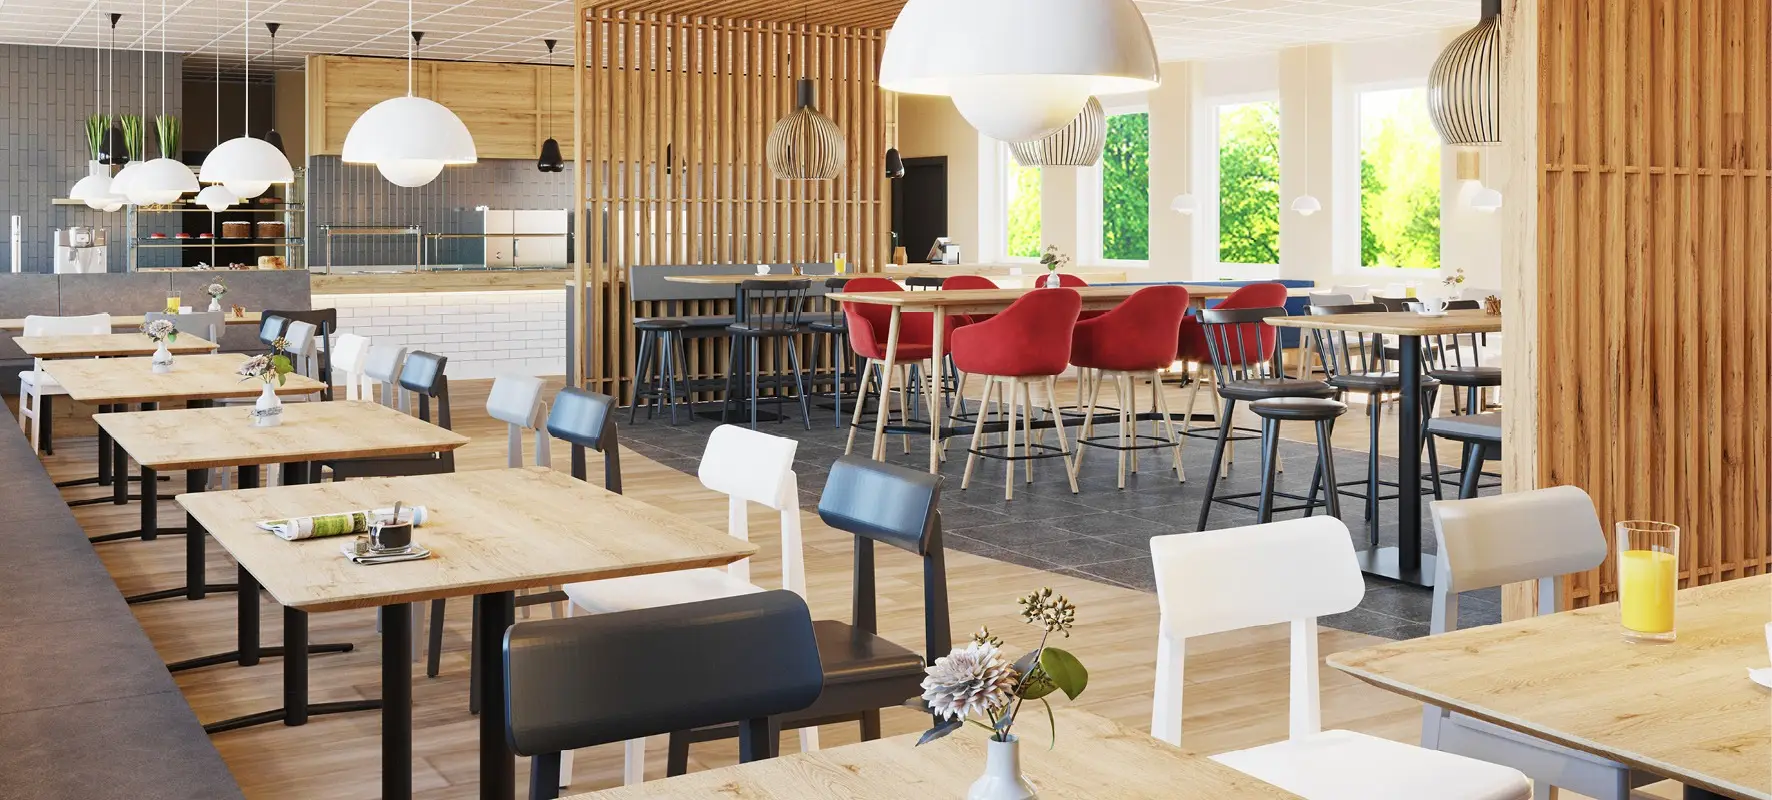 Einrichtung Mitarbeiterrestaurant Möbel Hocker, Holzstühle Polsterbank Tische